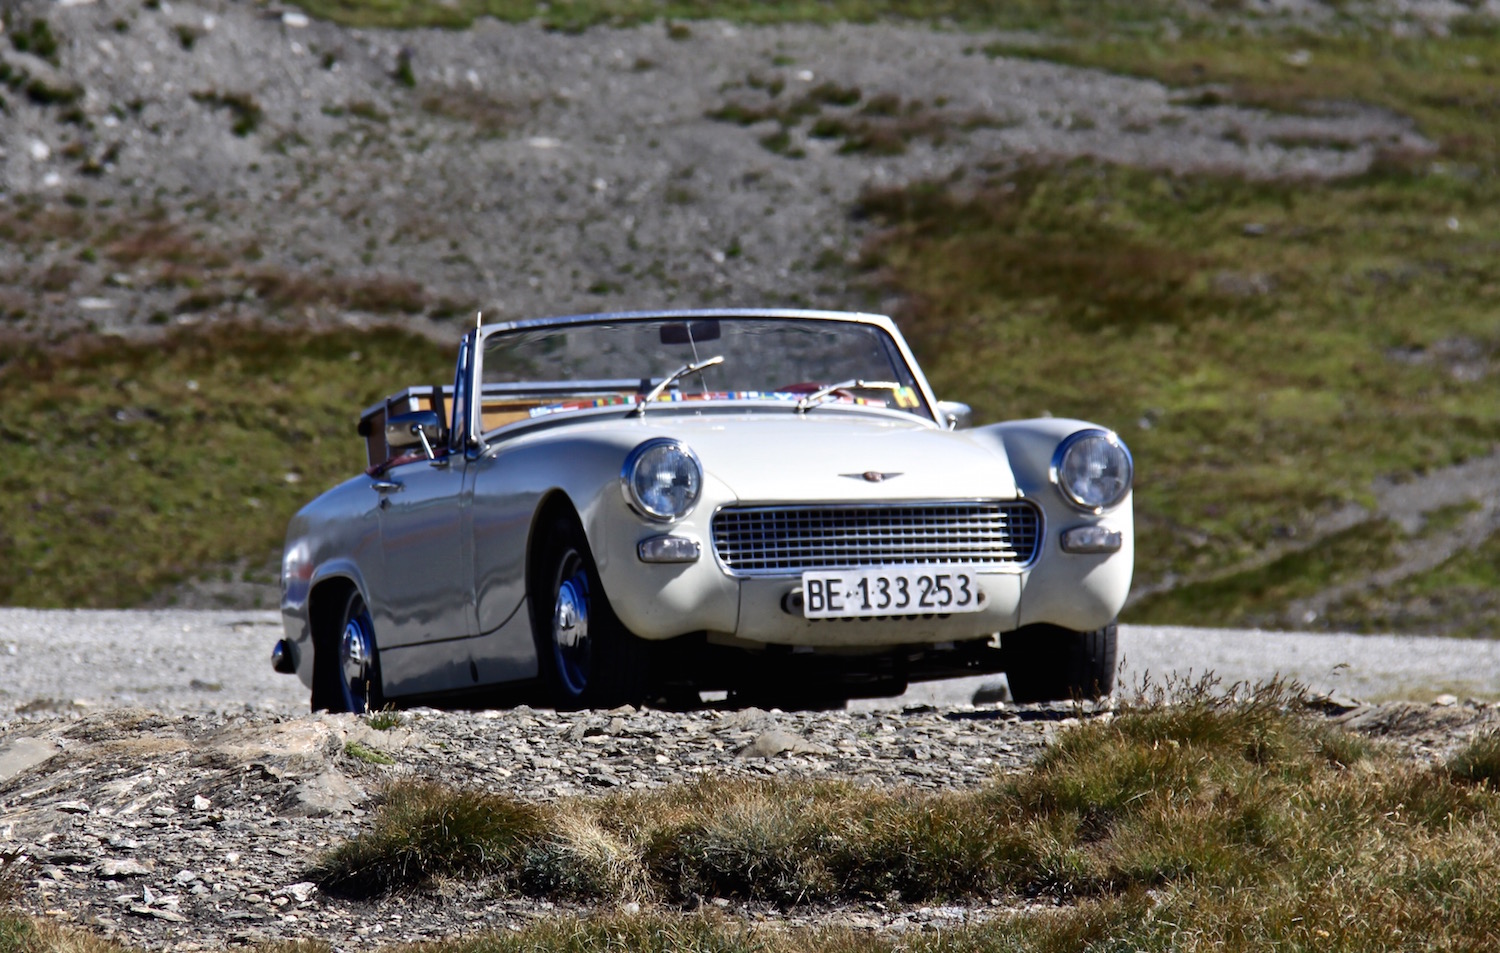 Begegnung der besonderen Art: Ein Aston Martin auf dem Col de l'Iseran, dem höchsten Pass der Reise.